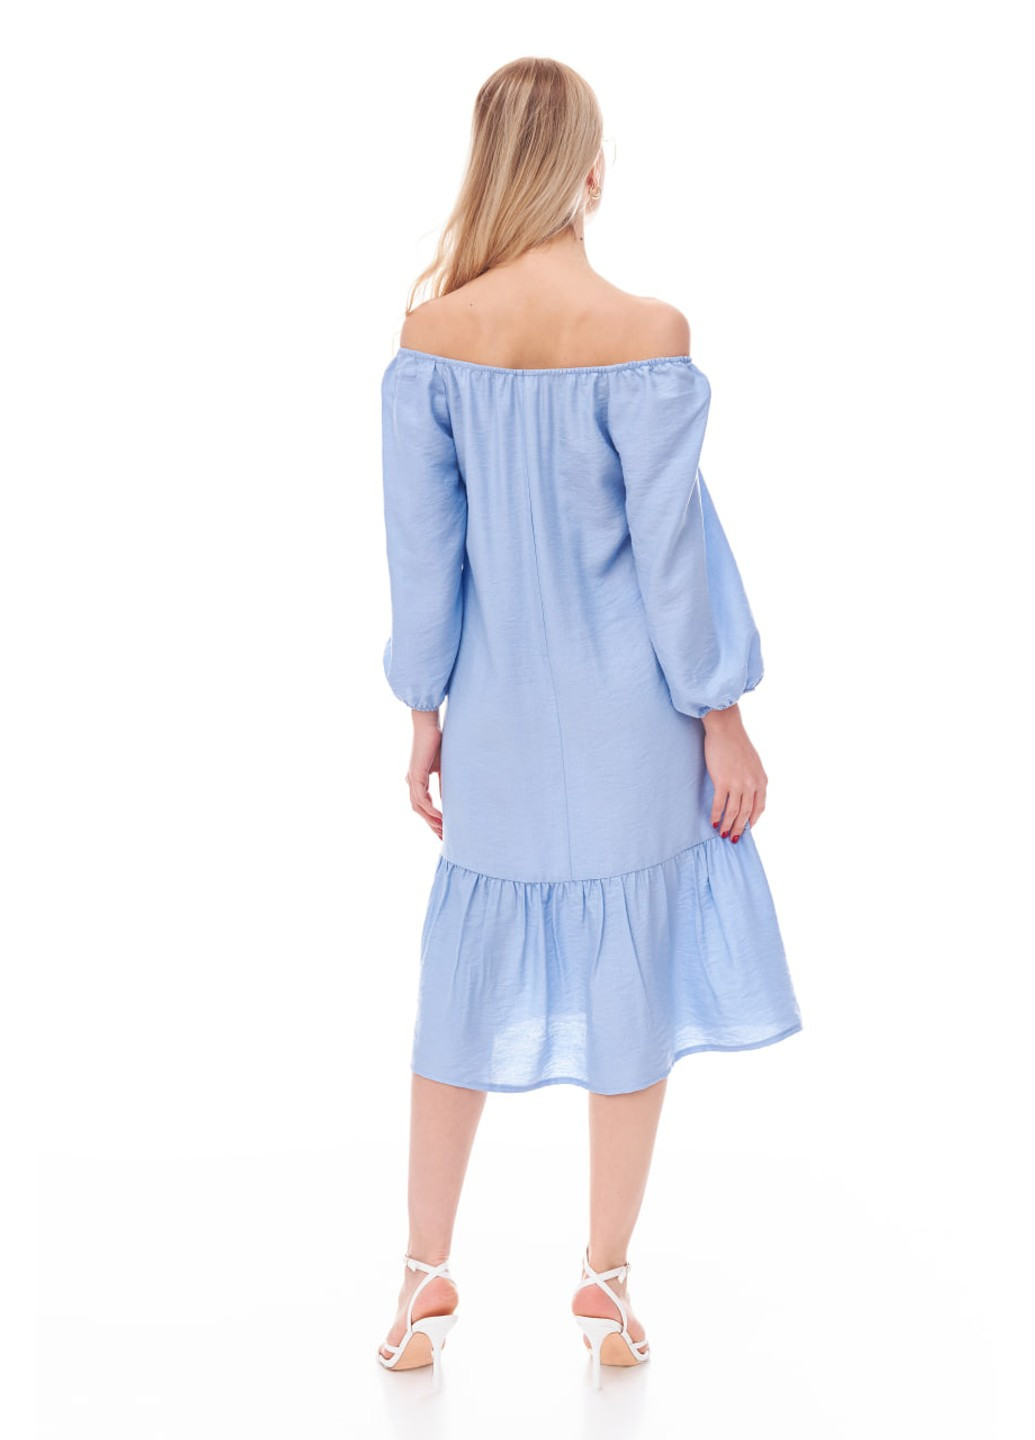 Голубое лёгкое платье с длинным рукавом. цвет голубой Oona